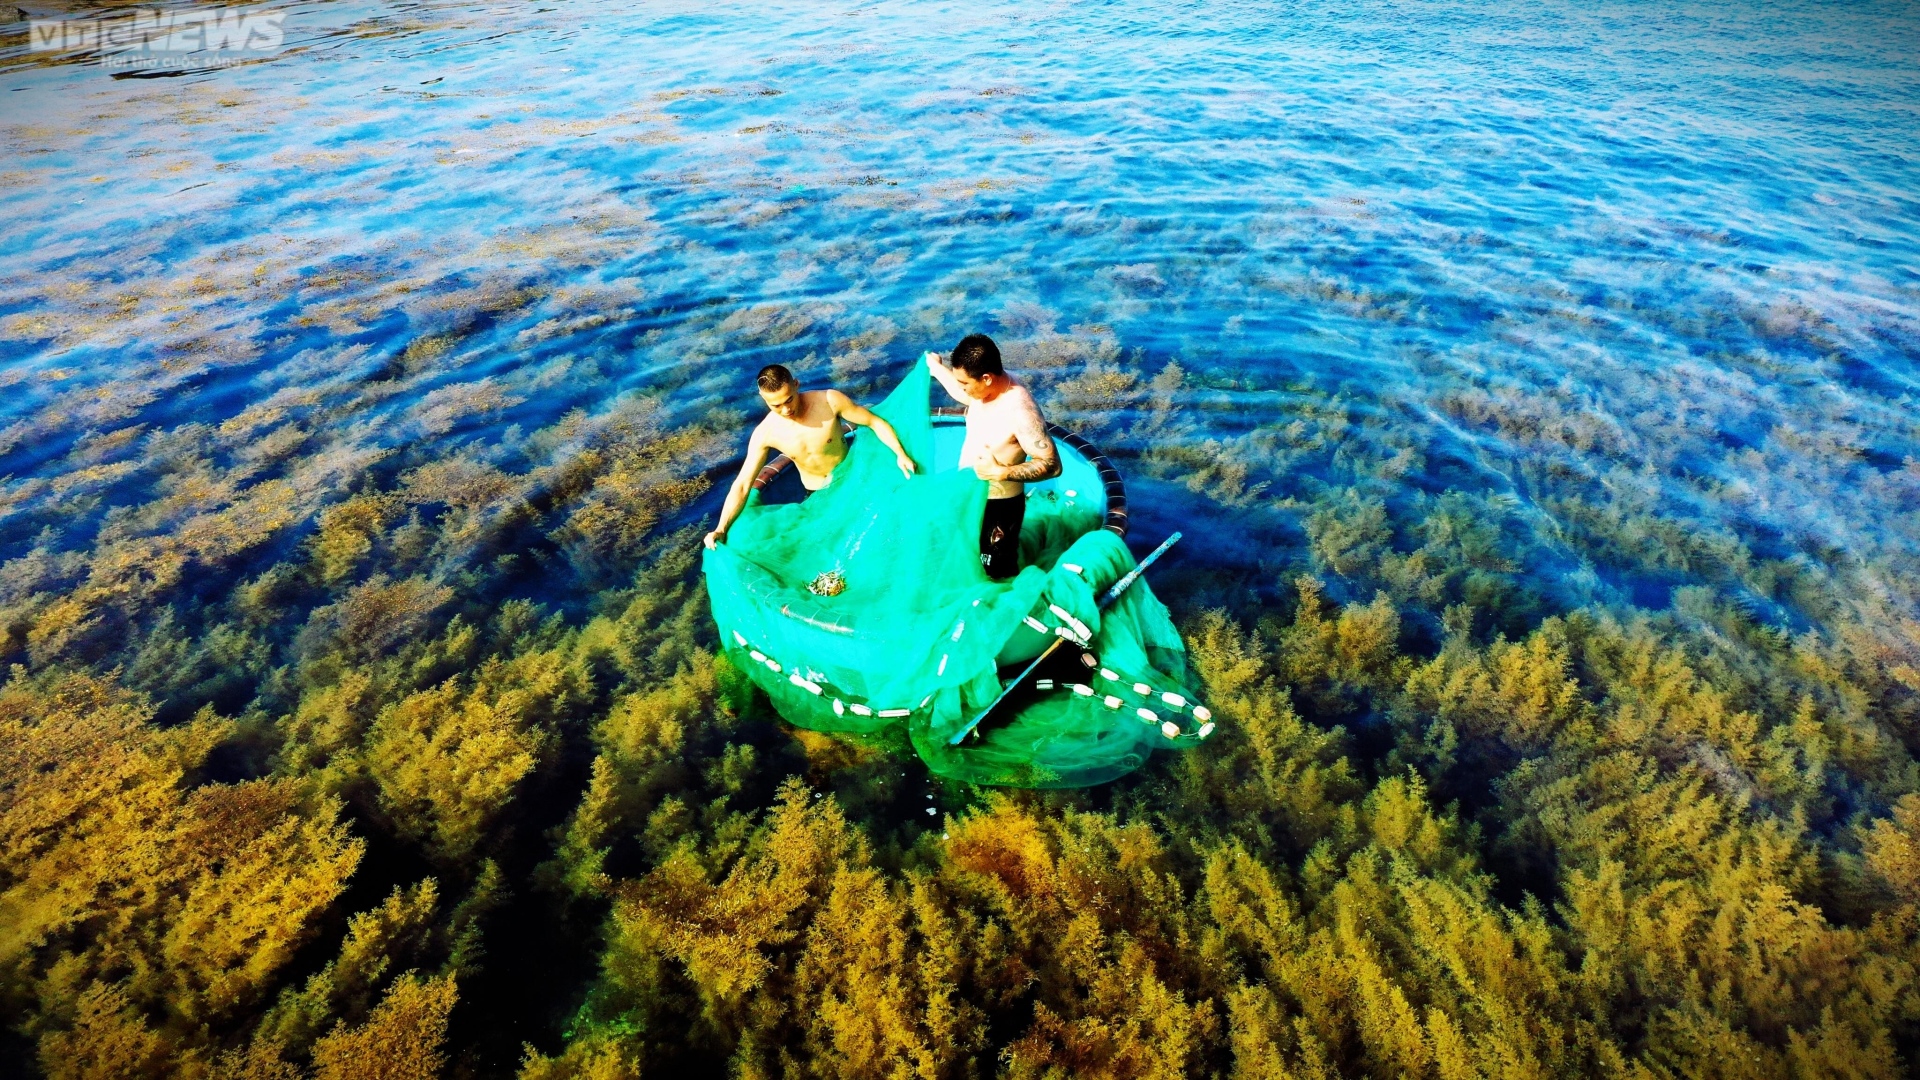 Ngất ngây 'cánh đồng vàng' dưới biển xanh trong ở đảo Hòn Khô, Bình Định - 11